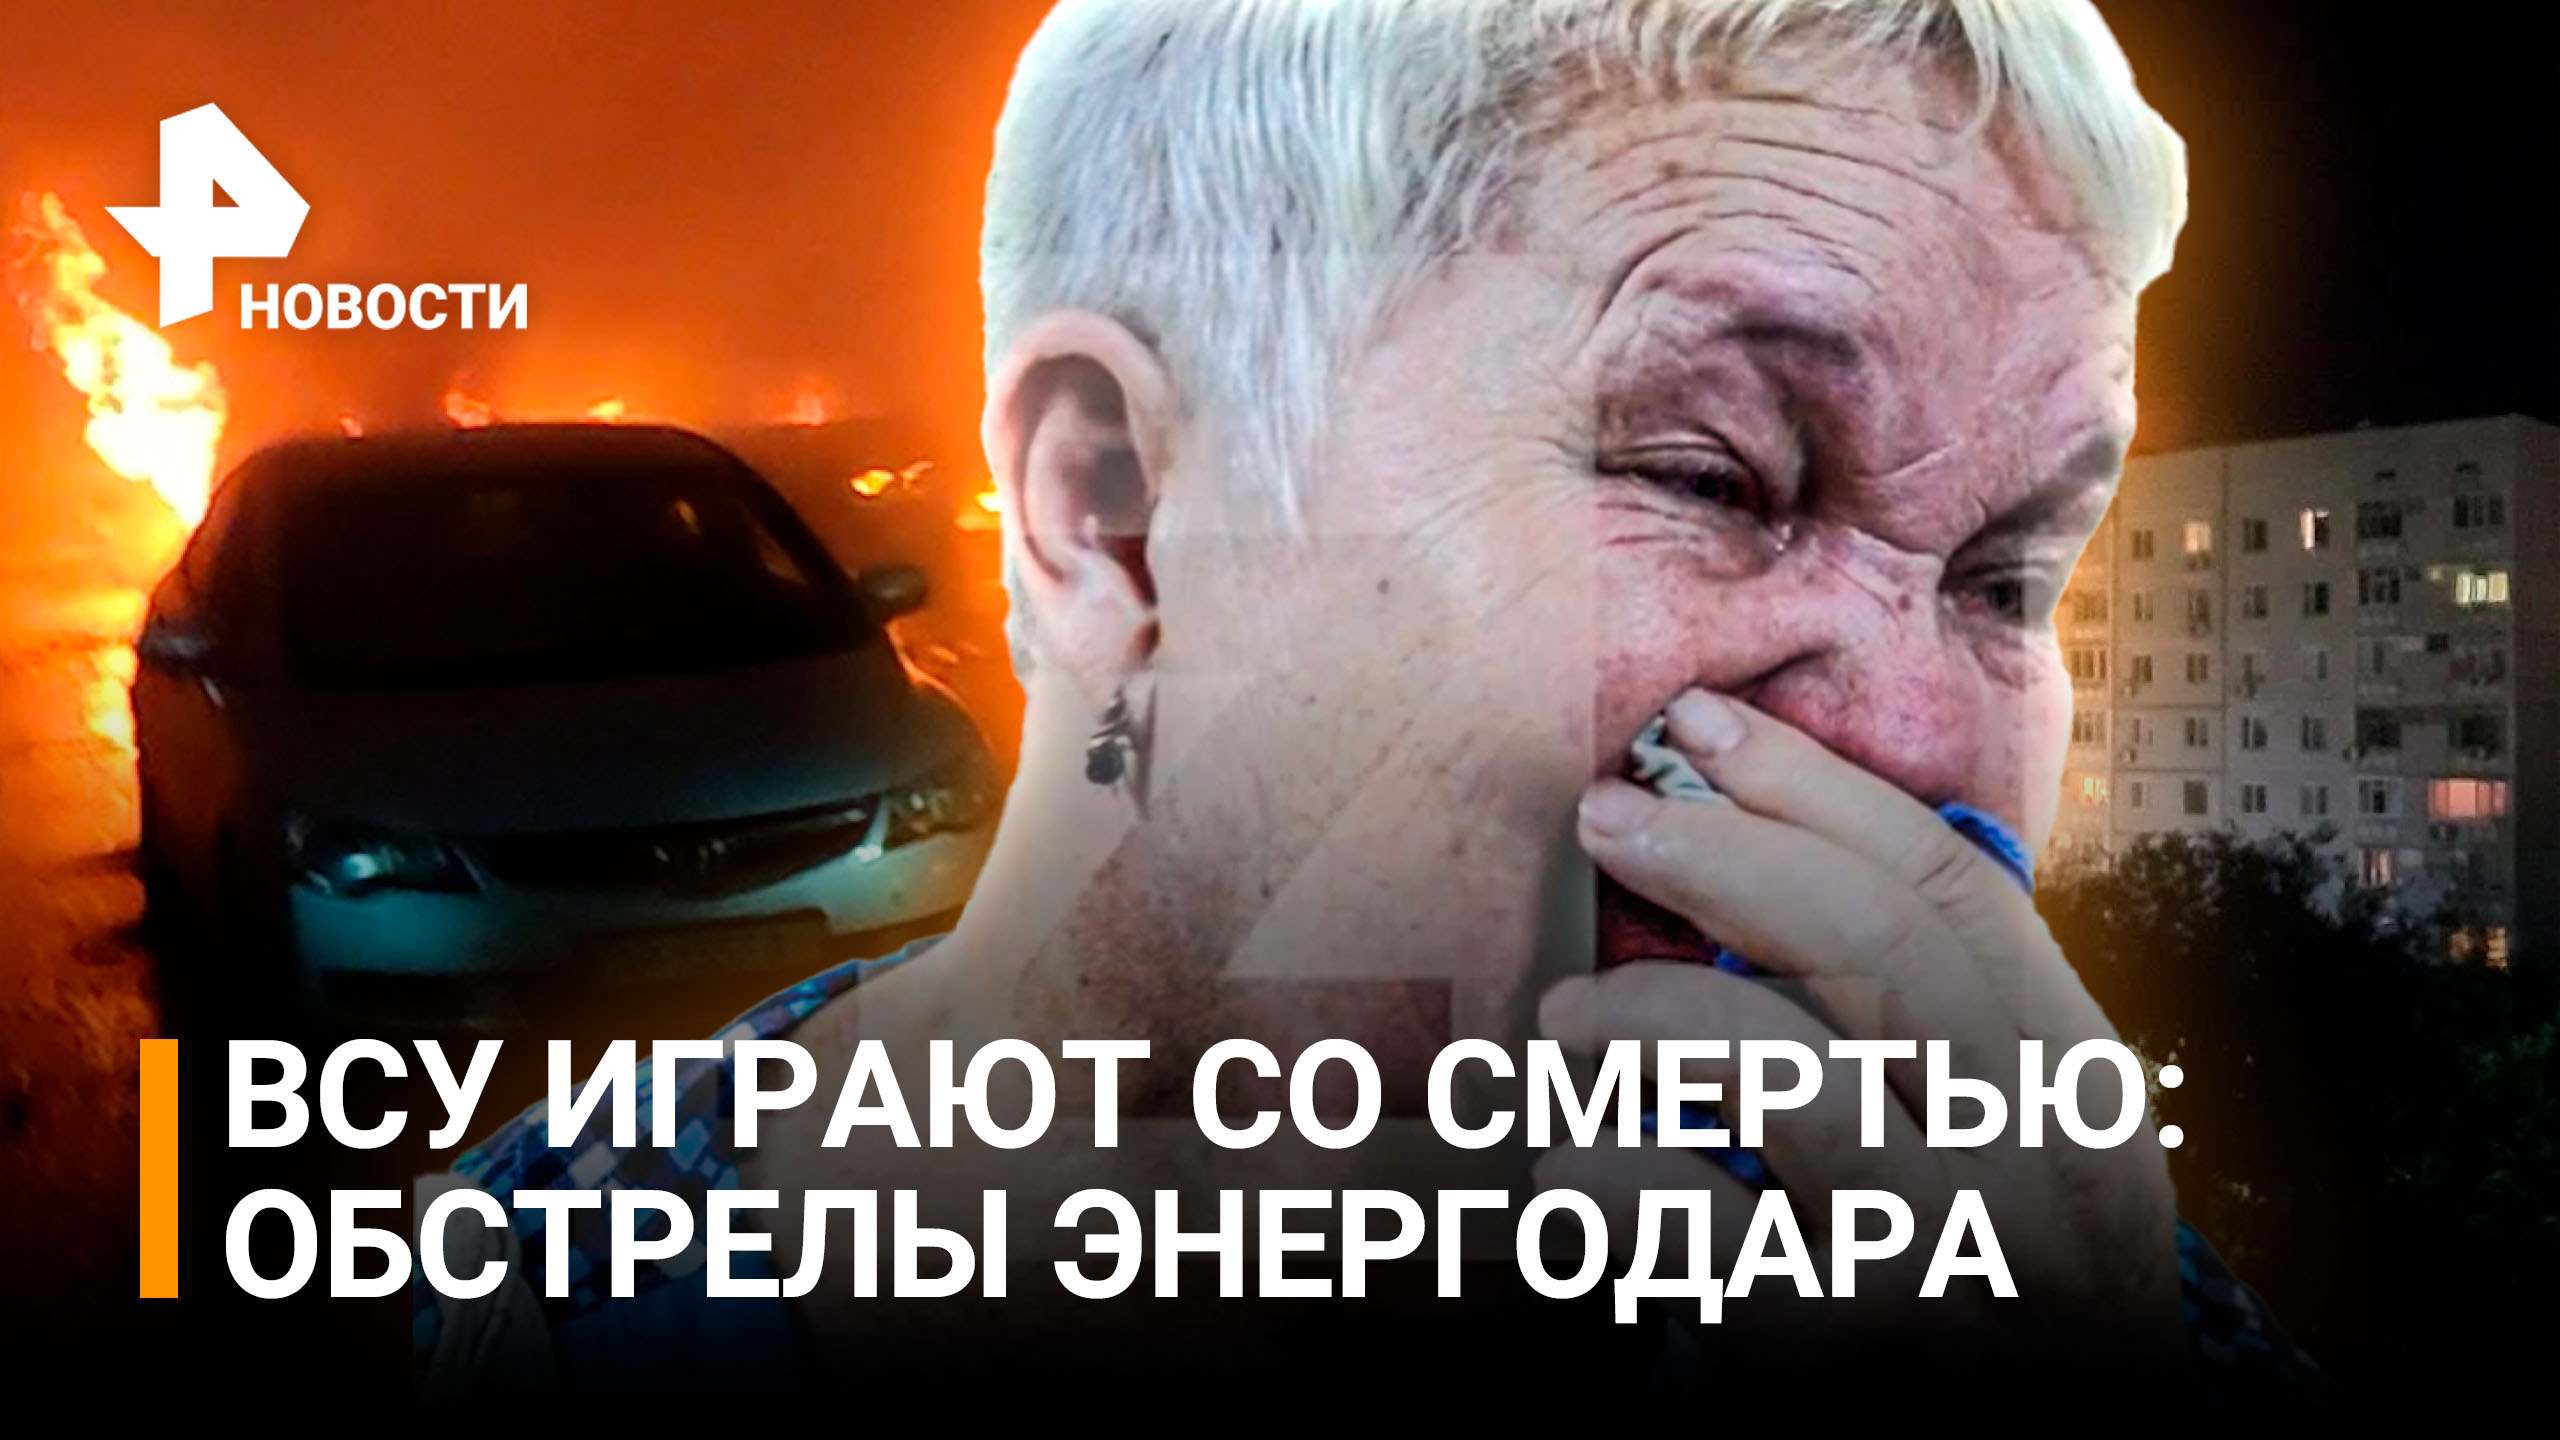 Украинские националисты обстреляли Энергодар / РЕН Новости